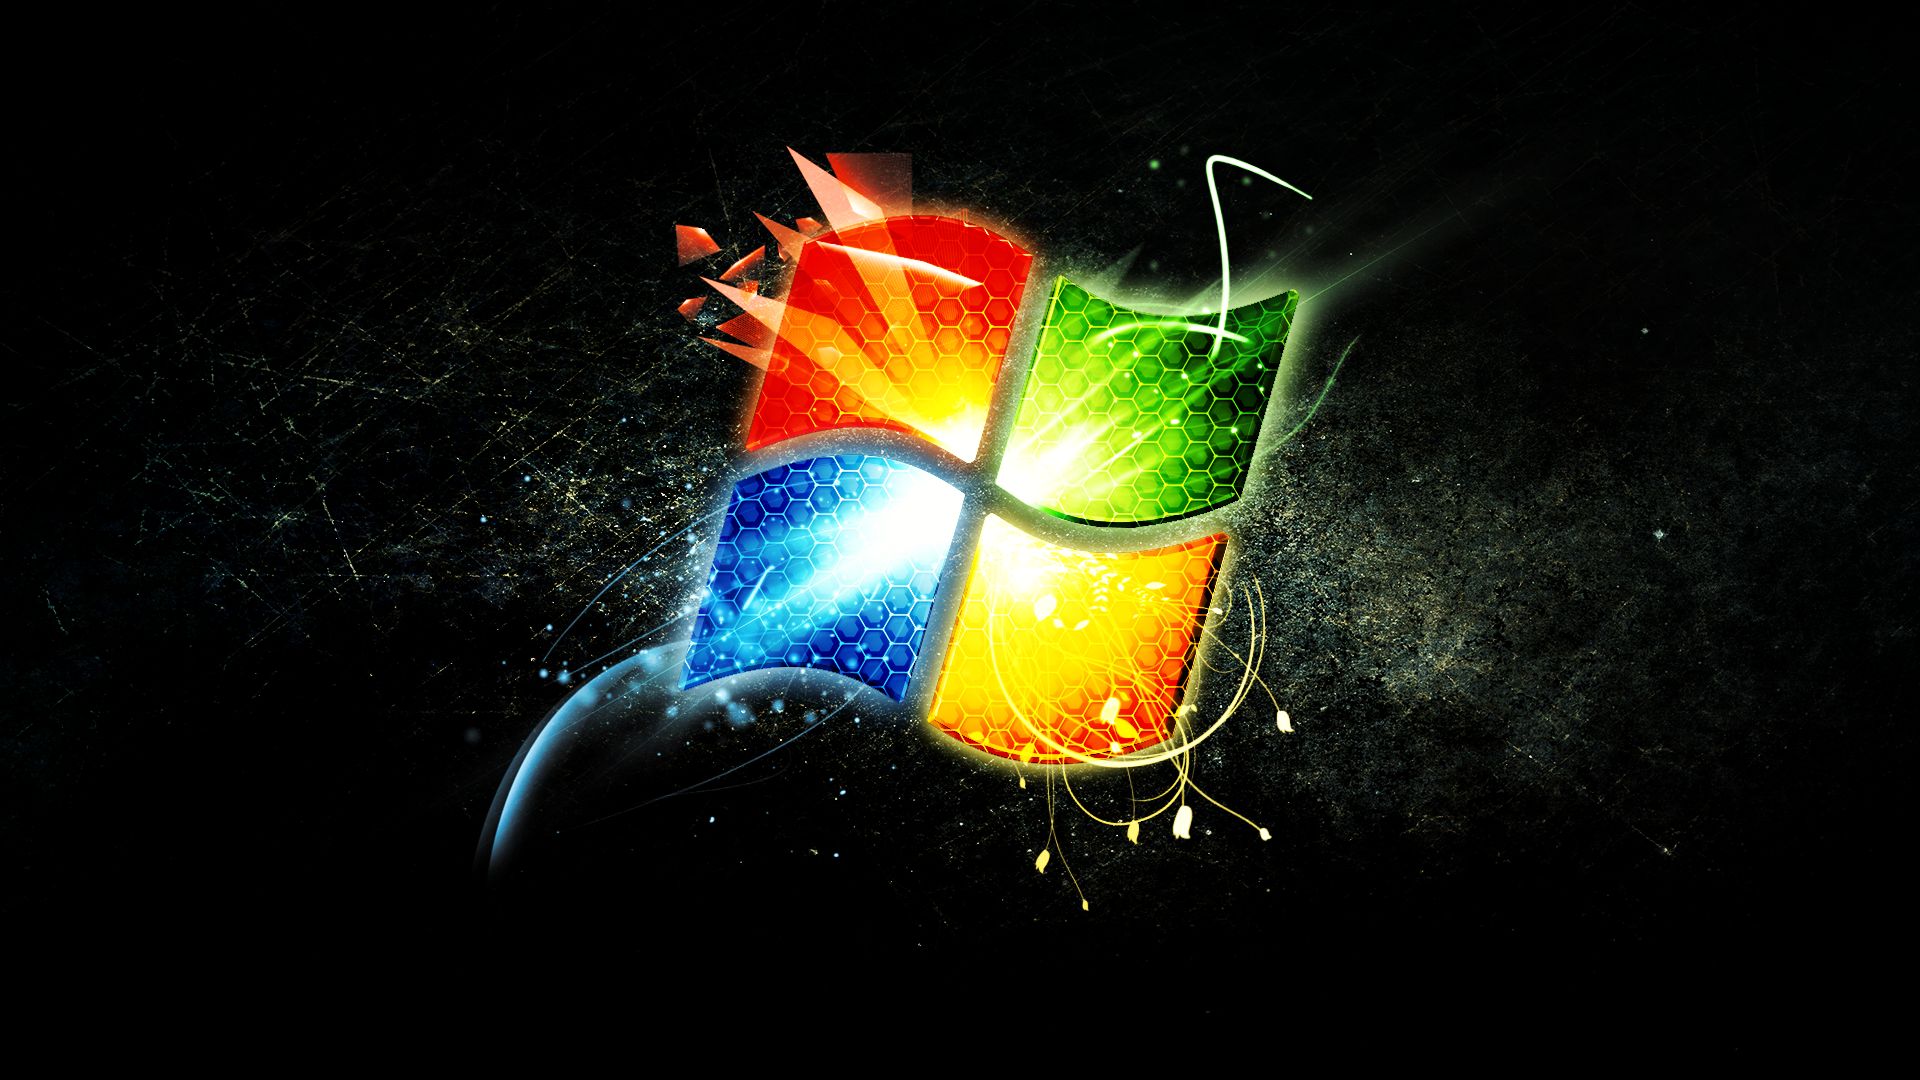 Baixe gratuitamente a imagem Tecnologia, Janelas, Windows 7 na área de trabalho do seu PC